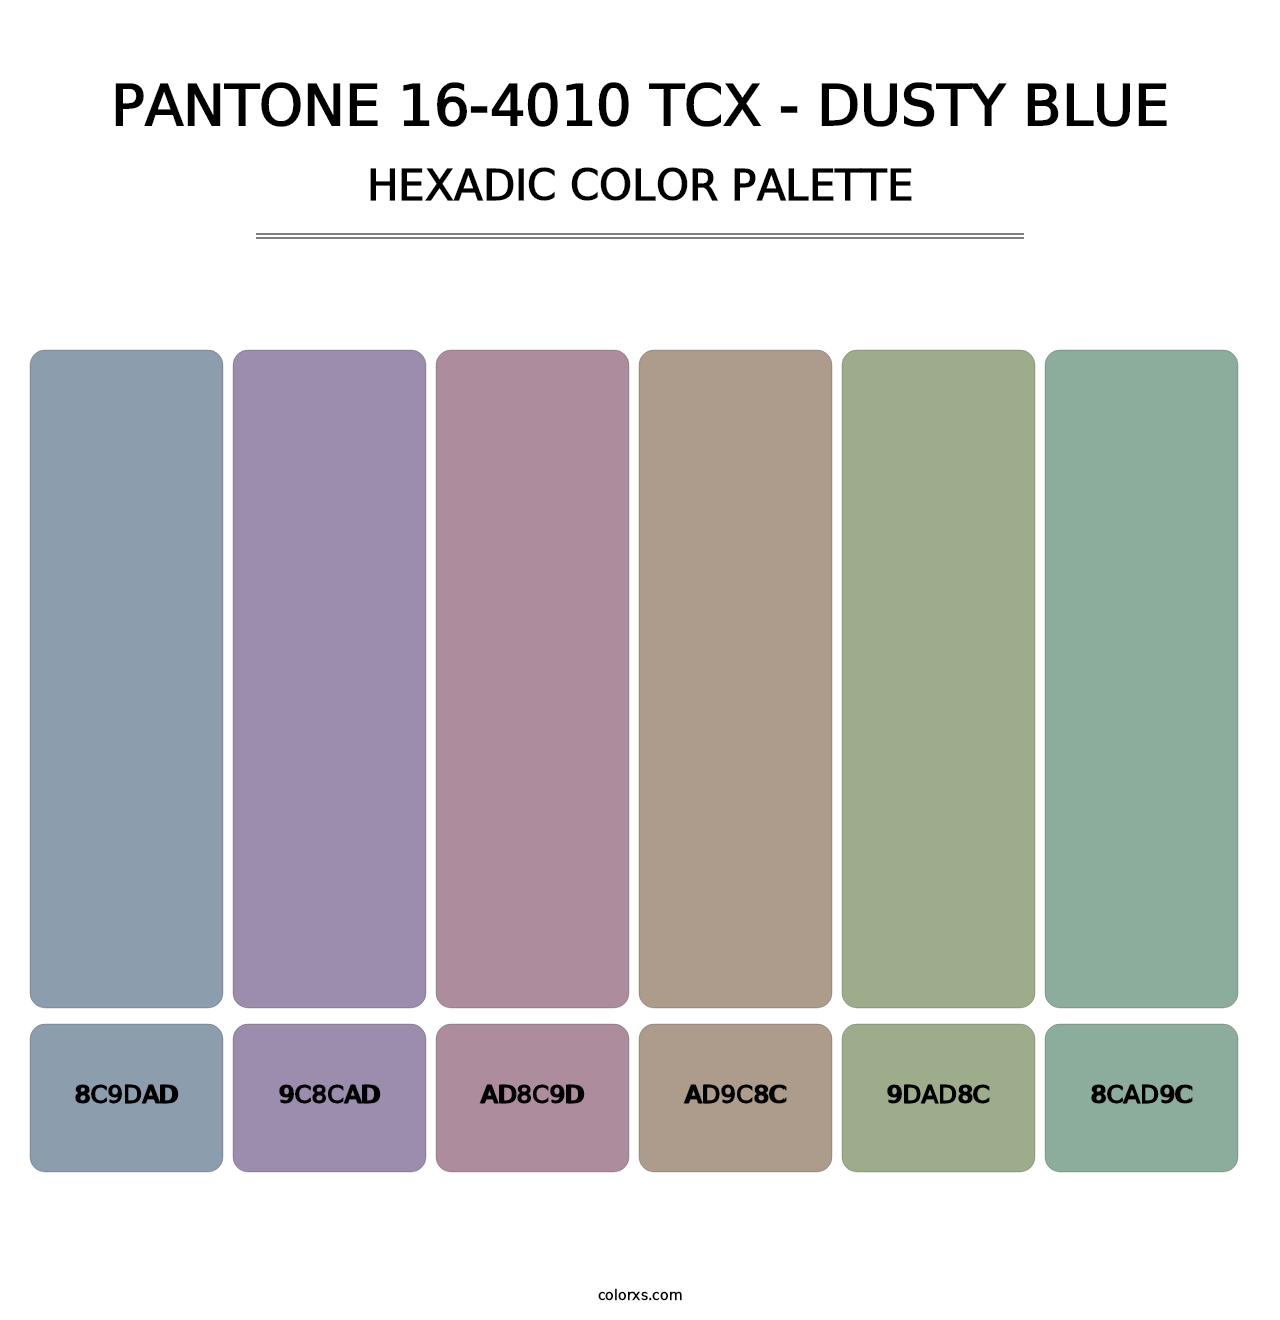 PANTONE 16-4010 TCX - Dusty Blue - Hexadic Color Palette